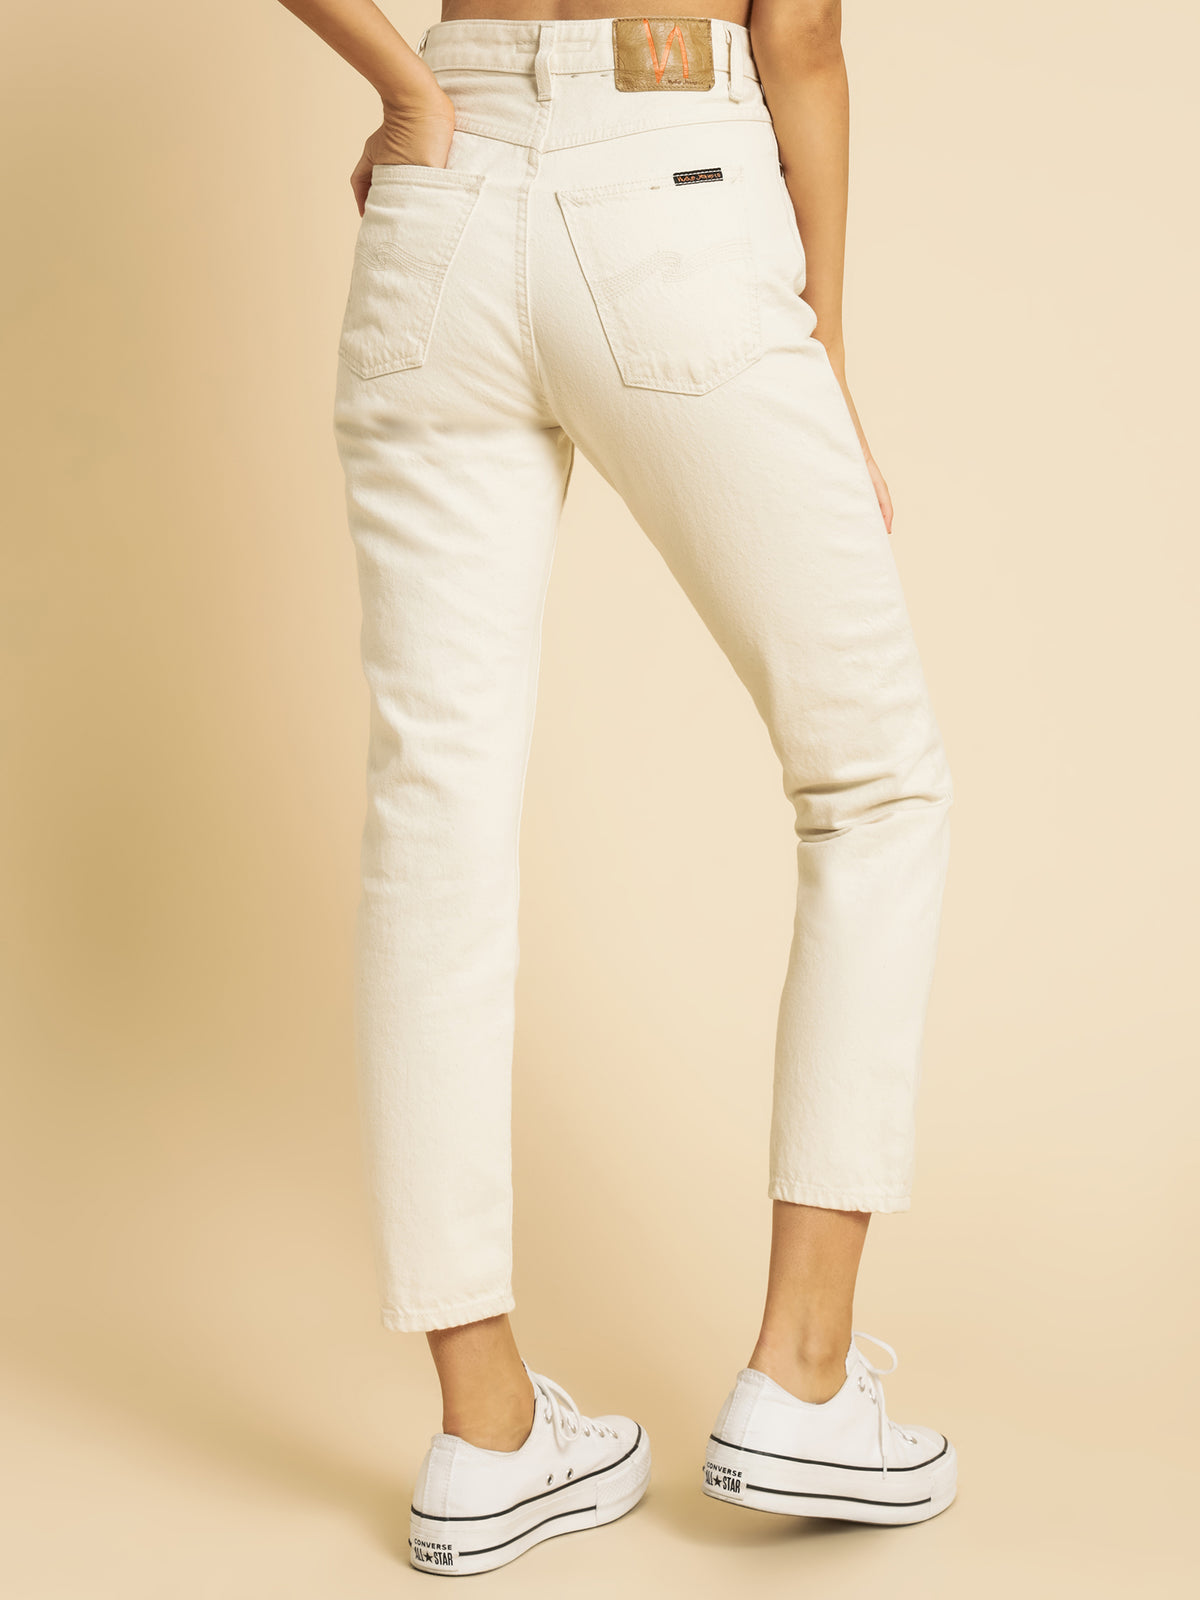 Breezy Britt Slim Jeans in Street Dusty White